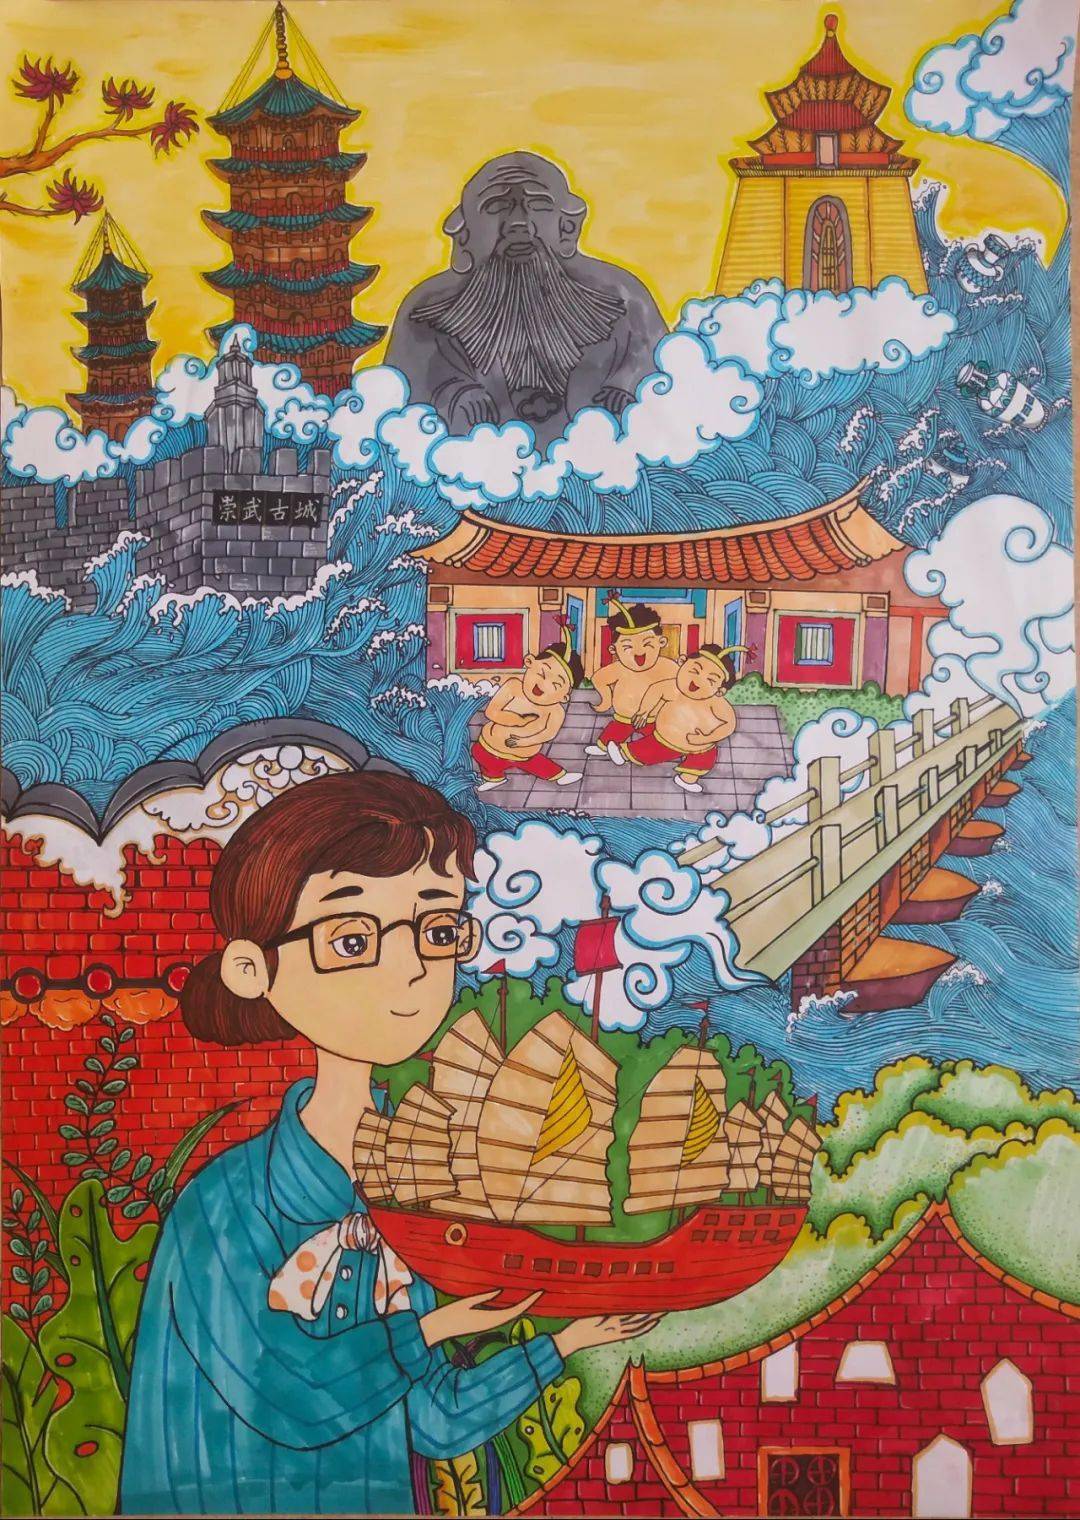 泉州:宋元中国的世界海洋商贸中心绘画作品(小学组三等奖)